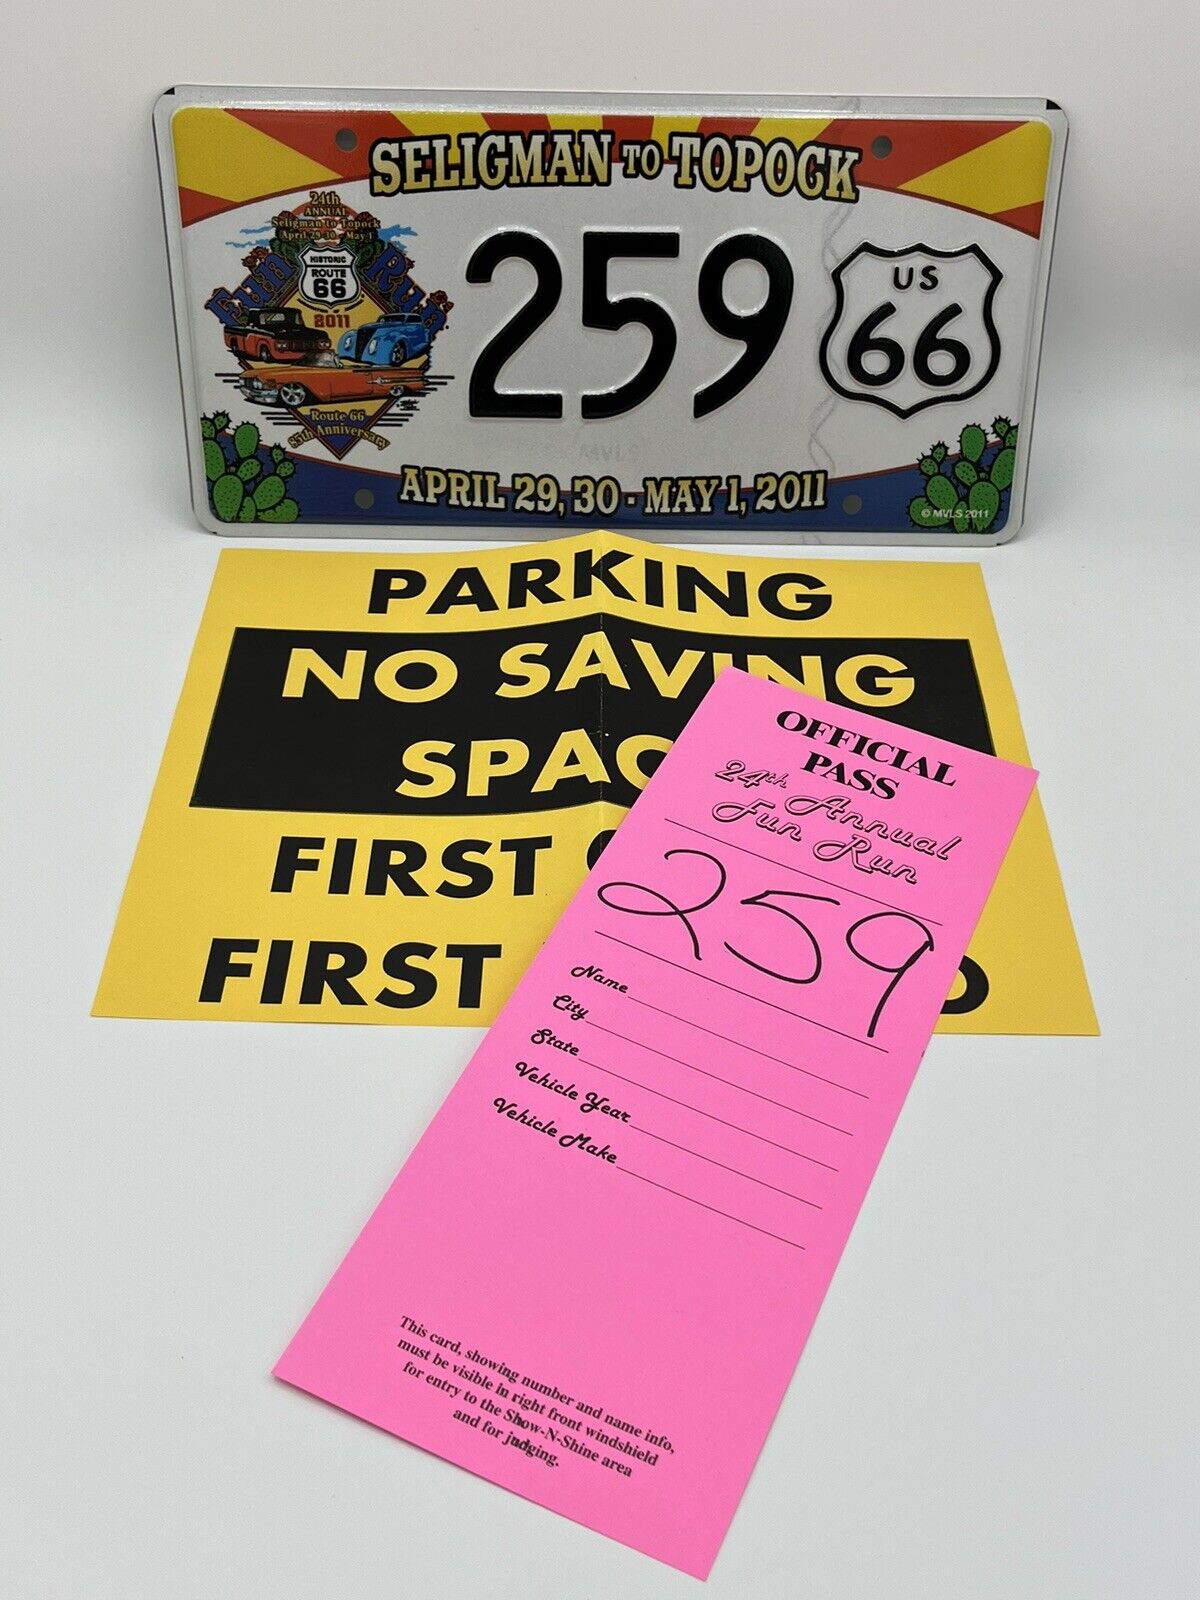 2011 Seligman to Topock Fun Run License Plate Historic Route 66 Arizona Cars